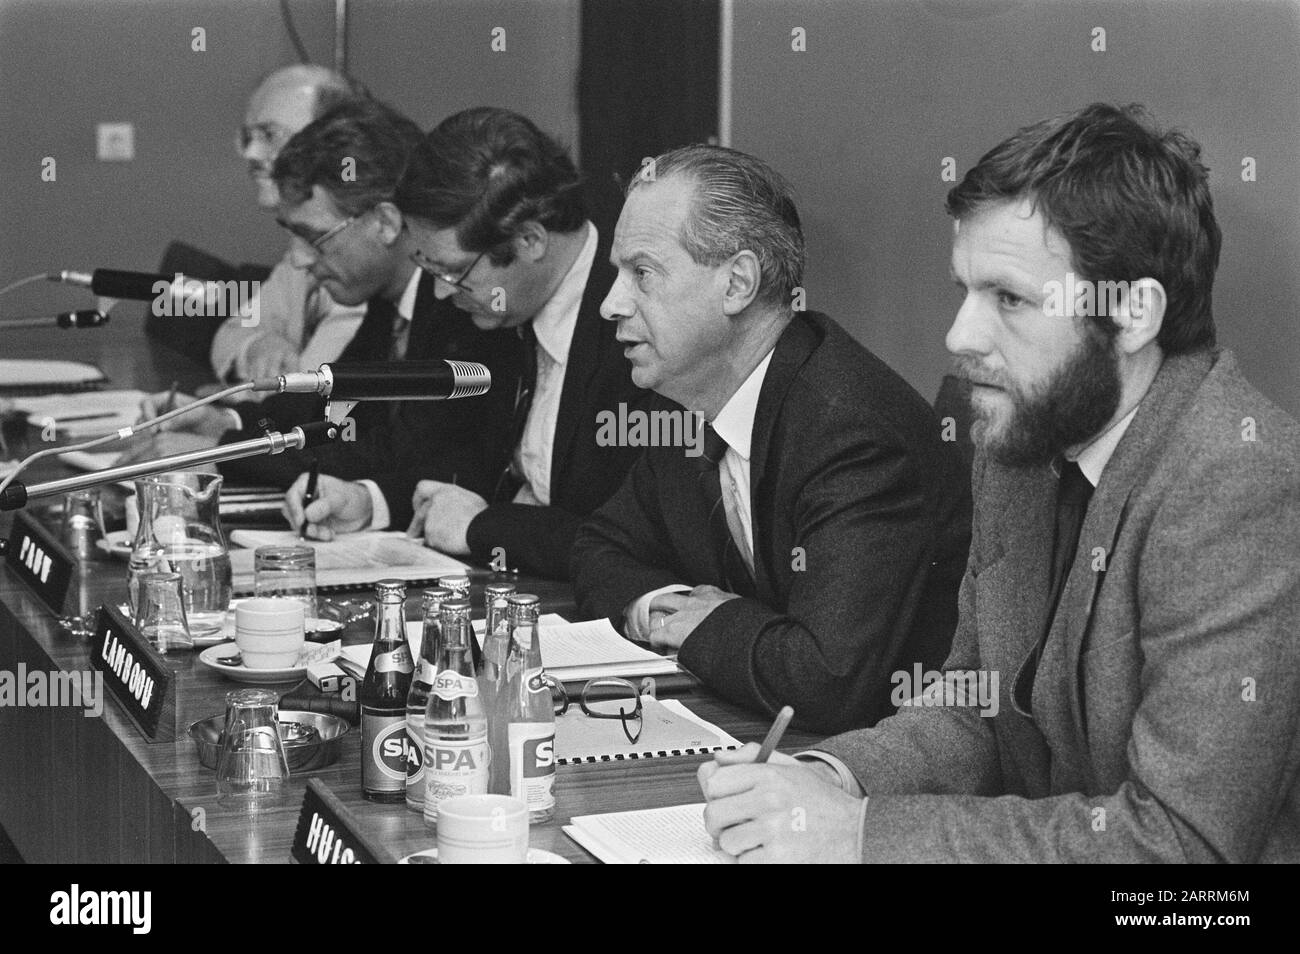 SER conférence de presse, H. D. M. Lamboij, chef, président de l'équipe du projet COB/SER Date : 12 septembre 1984 mots clés : conférences de presse Nom personnel : H. D. M. Lamboij Banque D'Images